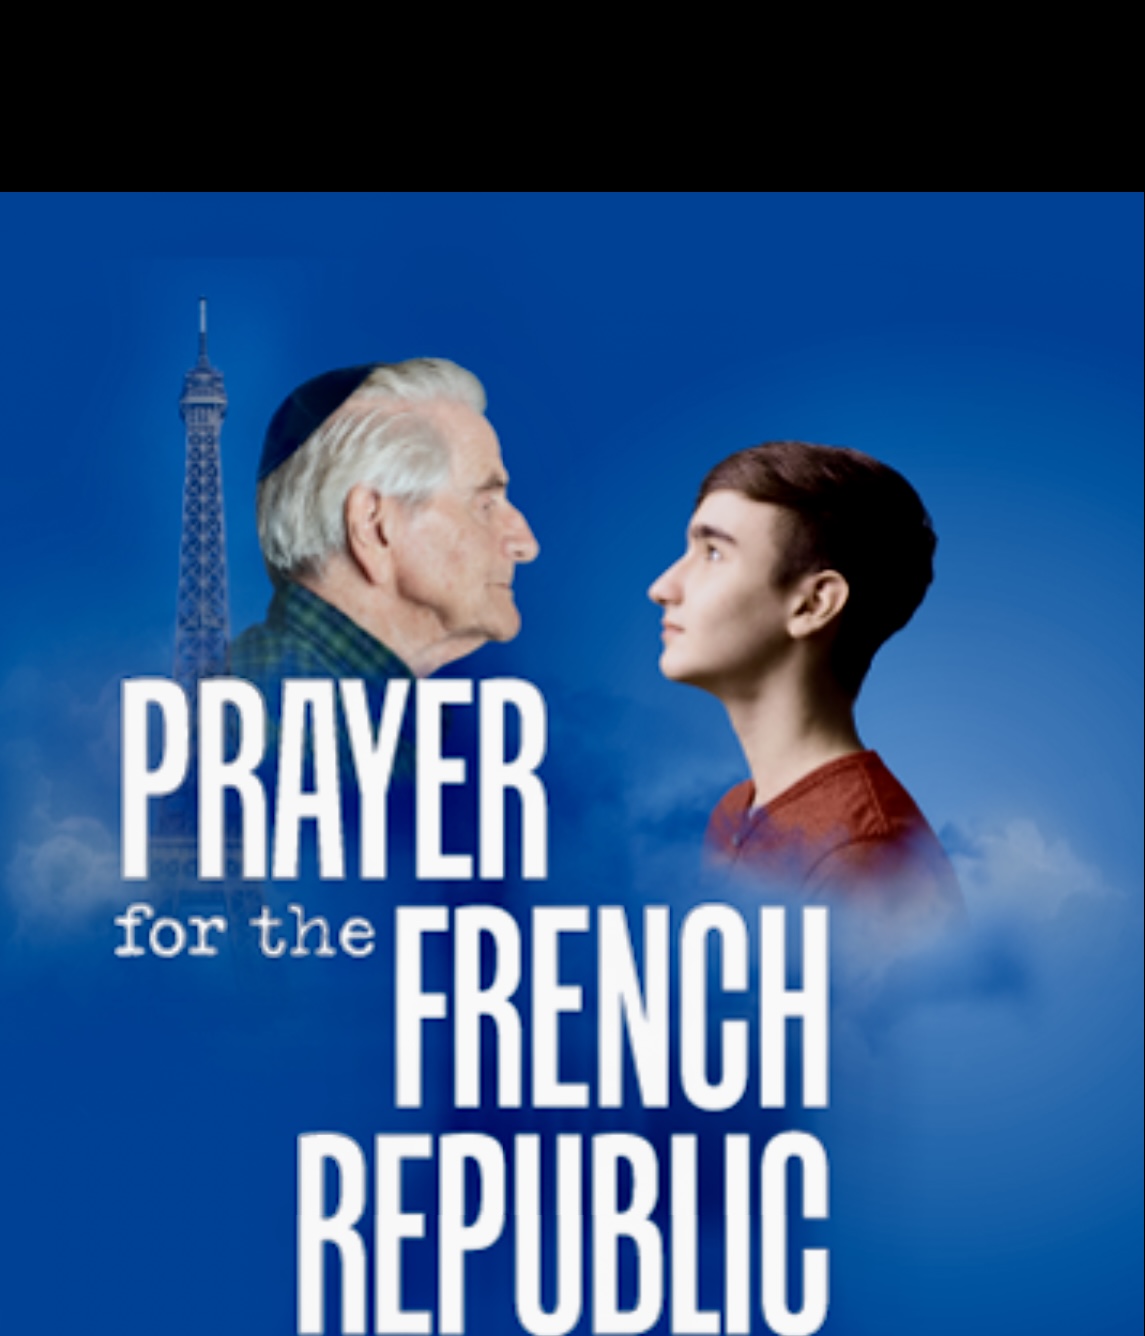 Prière pour la République française : Un appel solennel à la direction et au soutien divins dans la poursuite de la paix, de la prospérité et de l'unité au sein de la nation française.